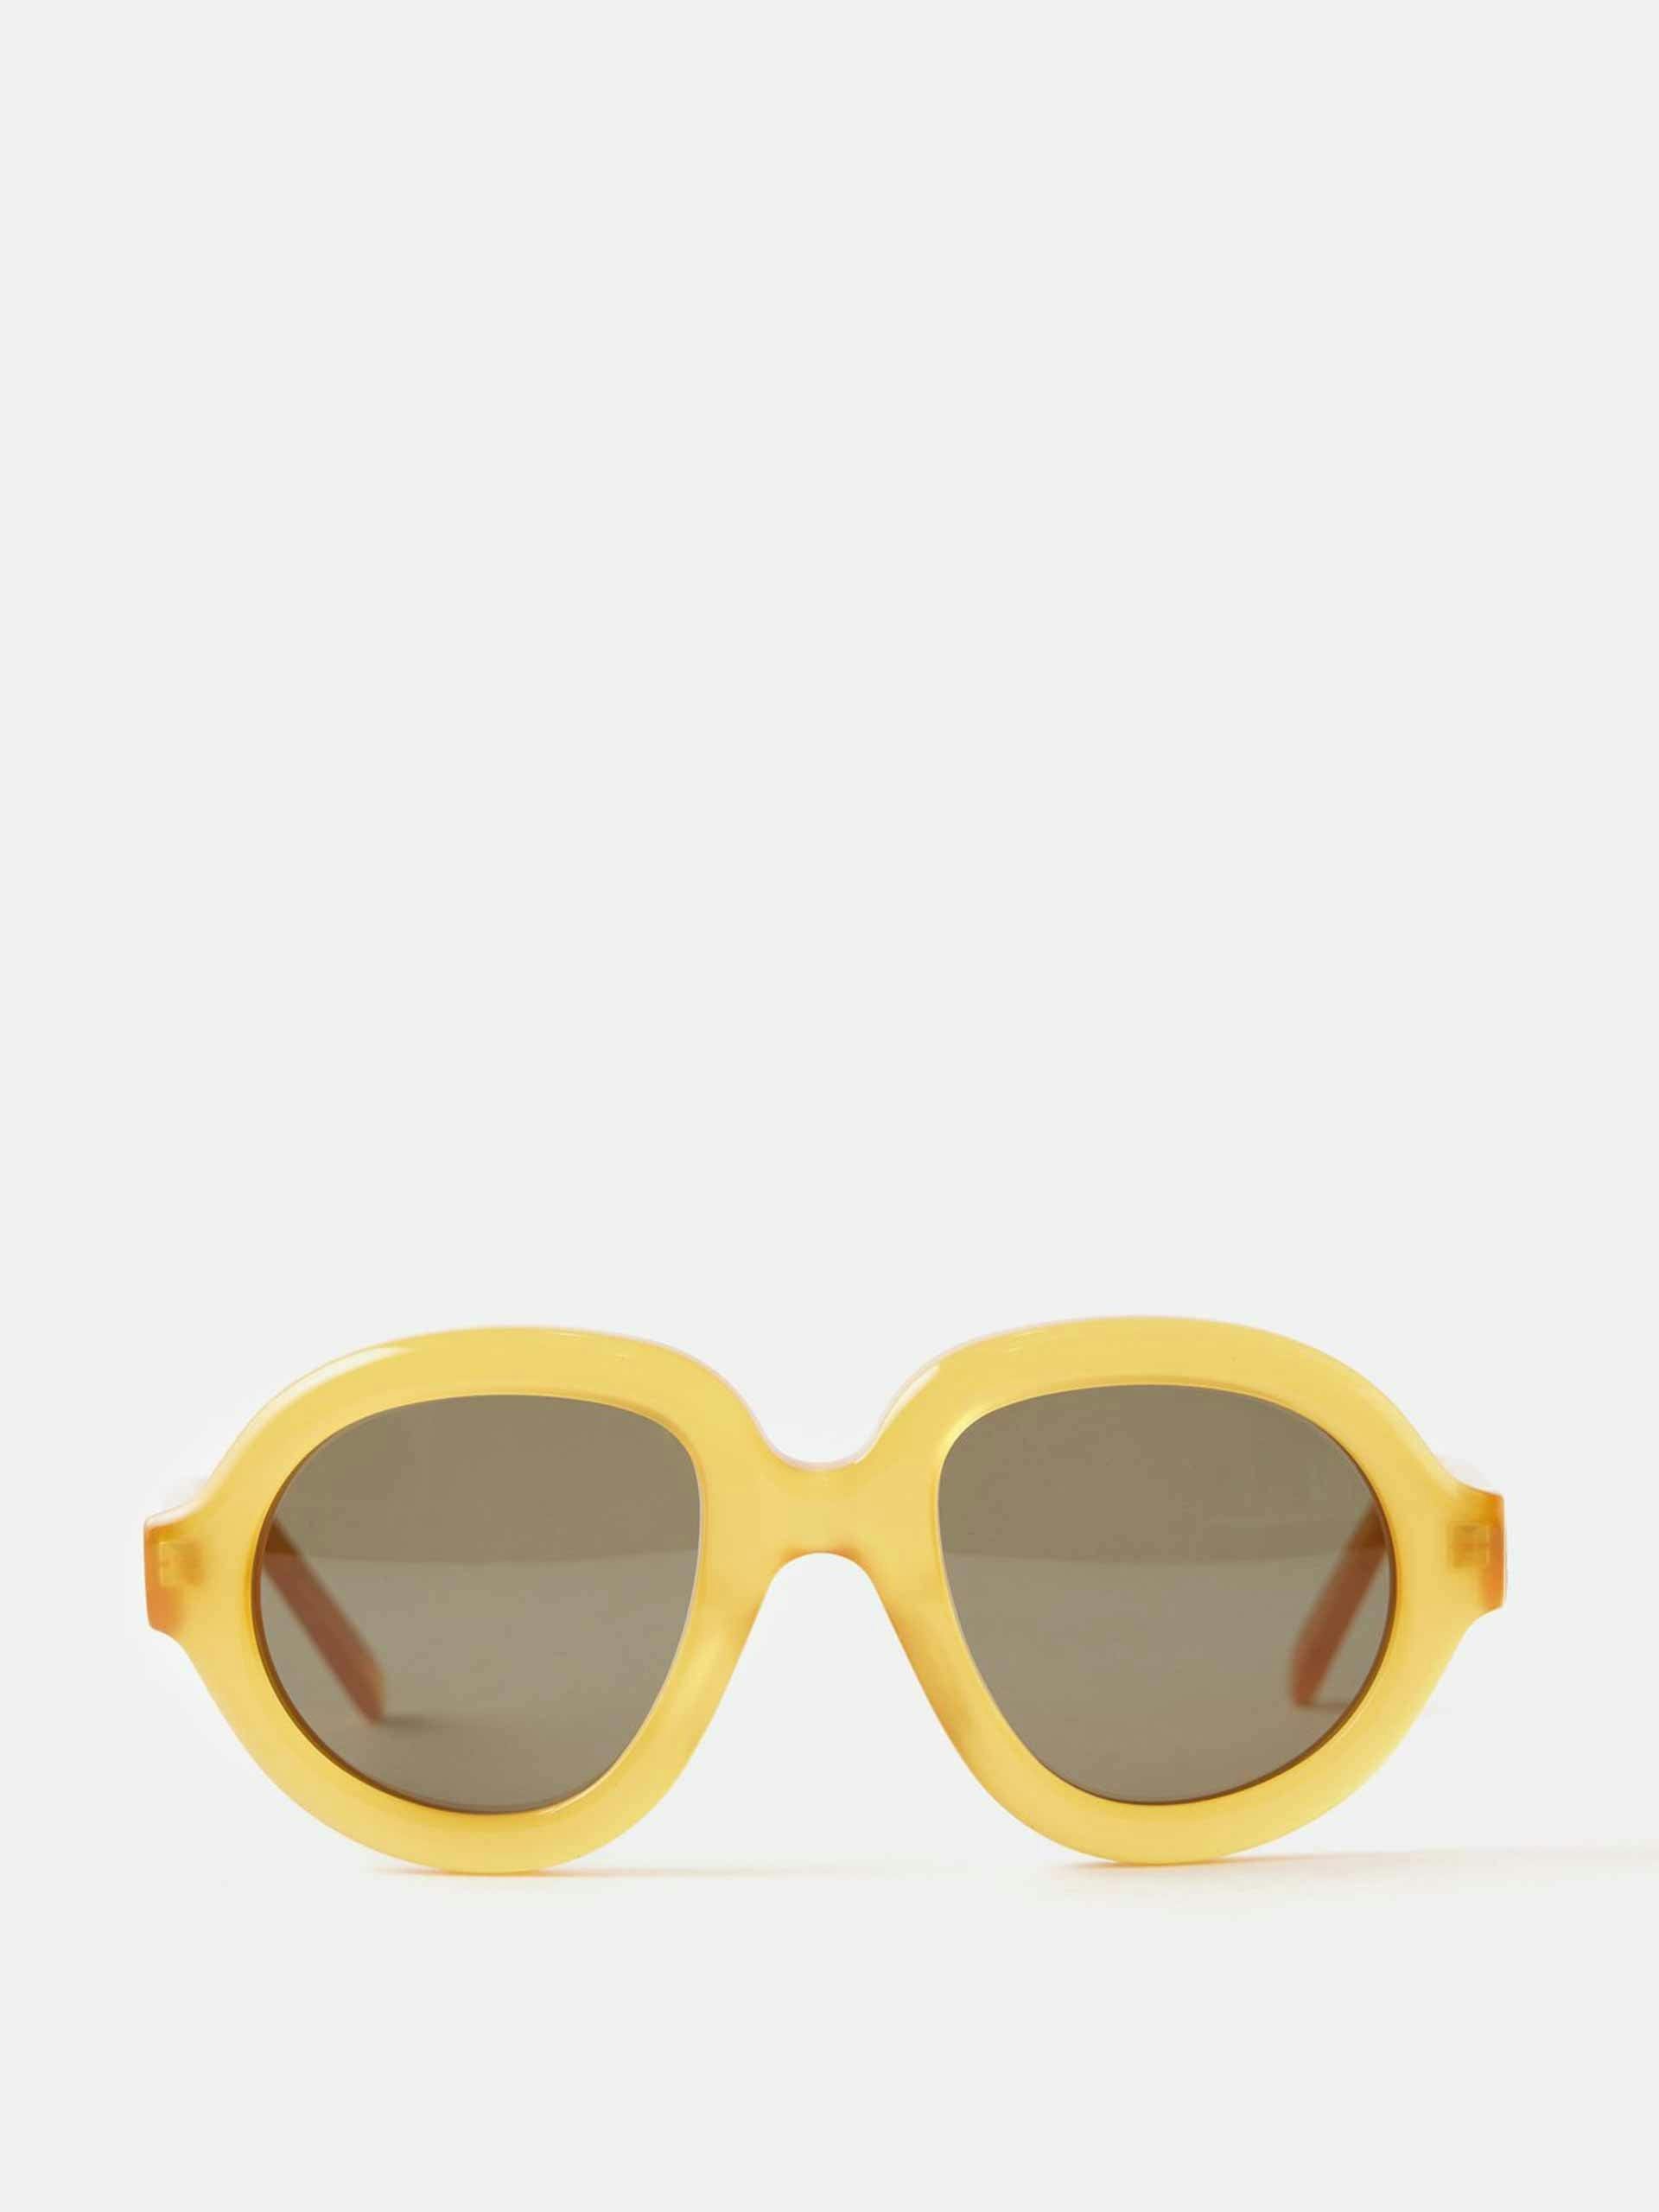 Yellow round sunglasses